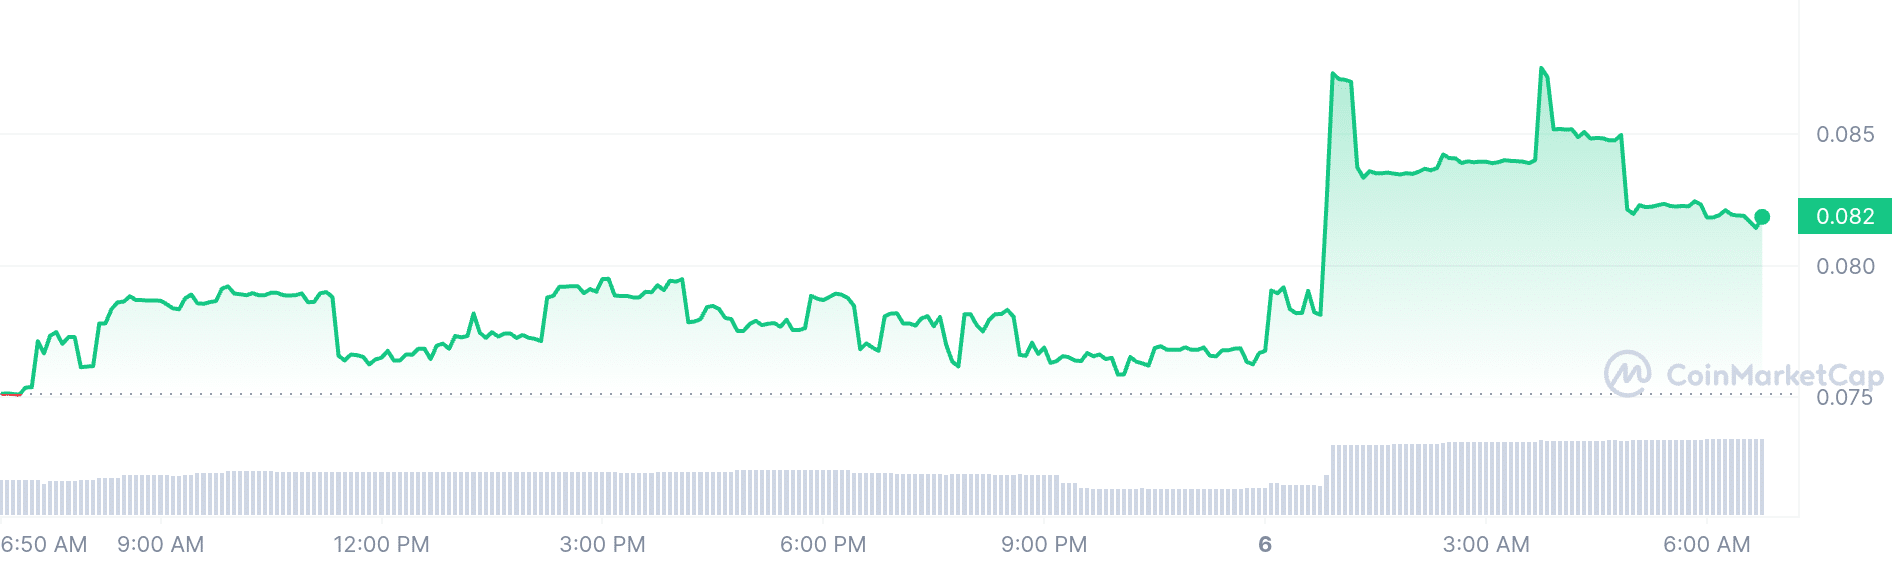 Wownero price chart